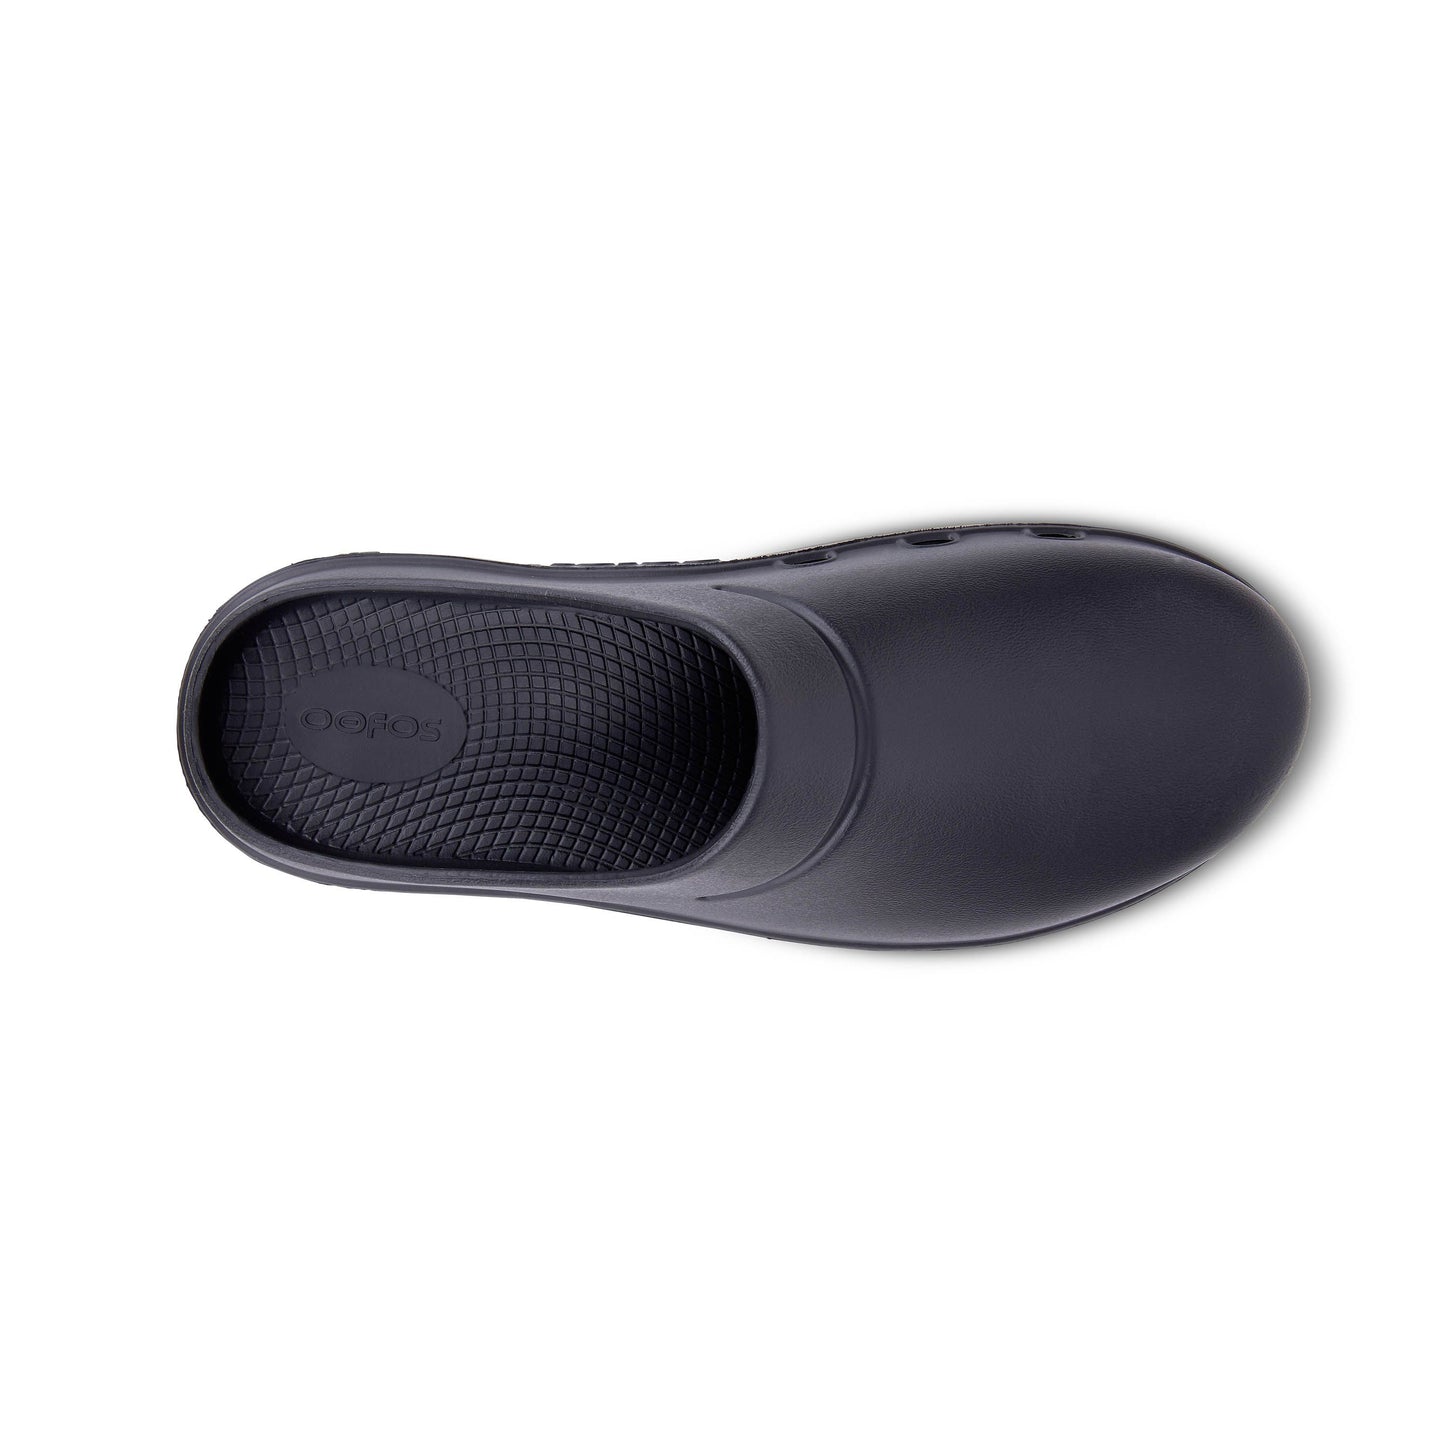 Unisex OOcloog Shoe - Black - Regular (D)